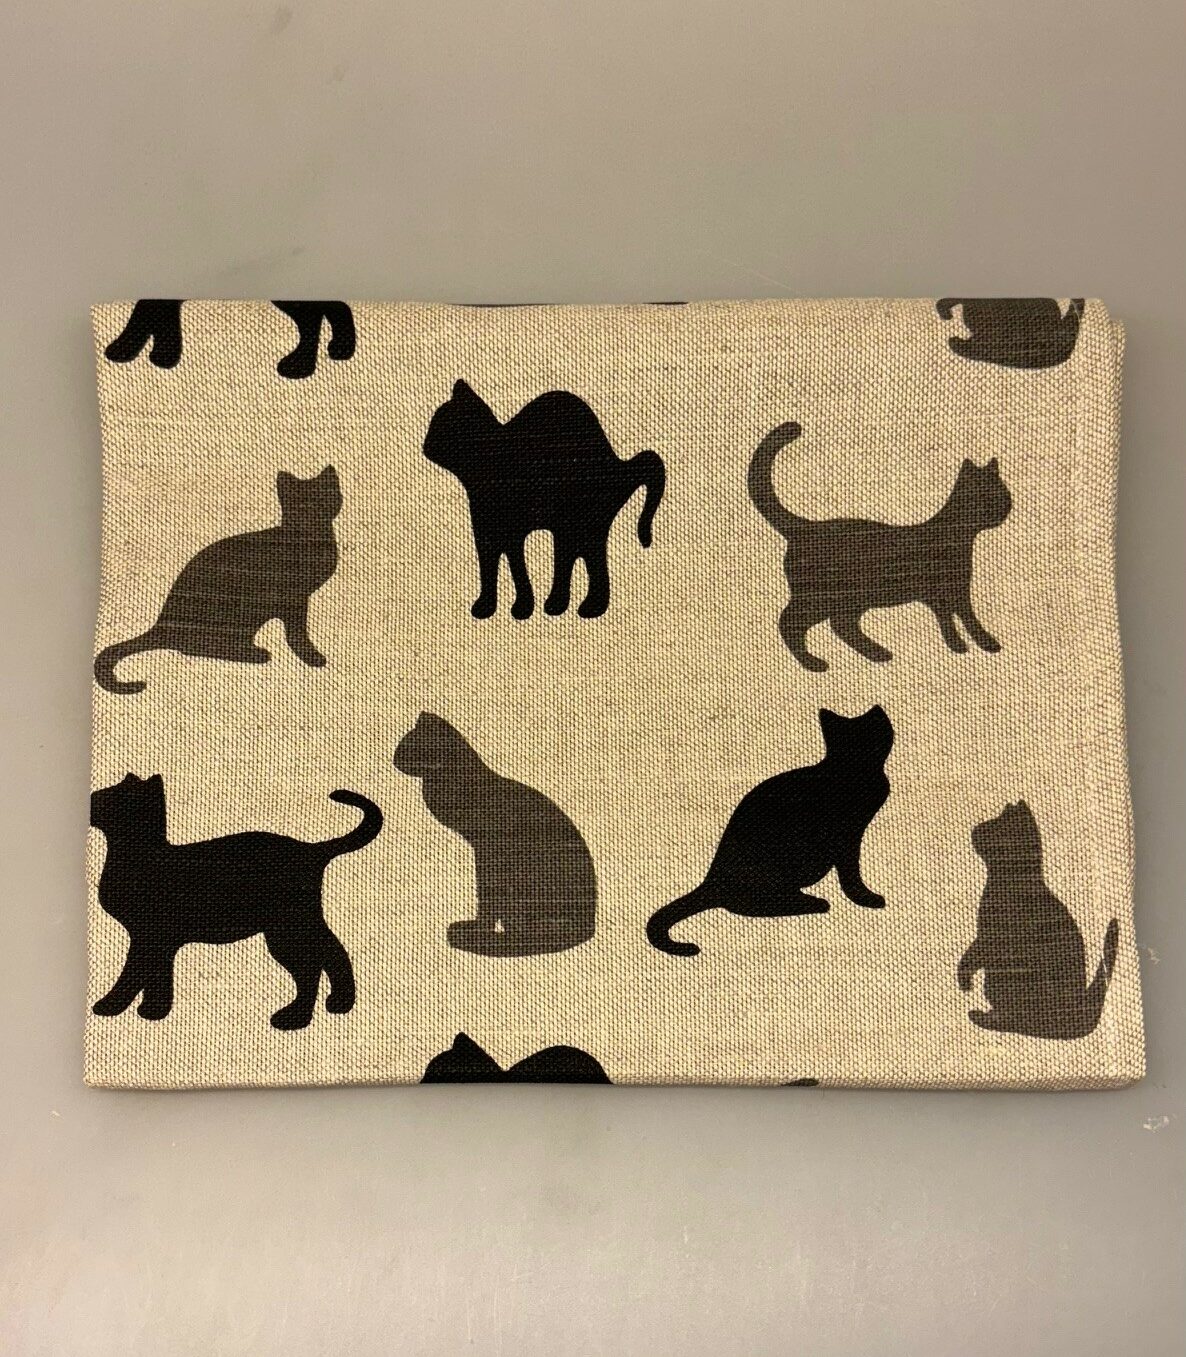 Viskestykke vævet - Hør/Bomuld - sandfarvet med Katte, katteviskestykke, katte, kat, cats, cat, katteting, ting med katte, gave, gaveide, katteejer, kattedame, catlover, biti, ribe,